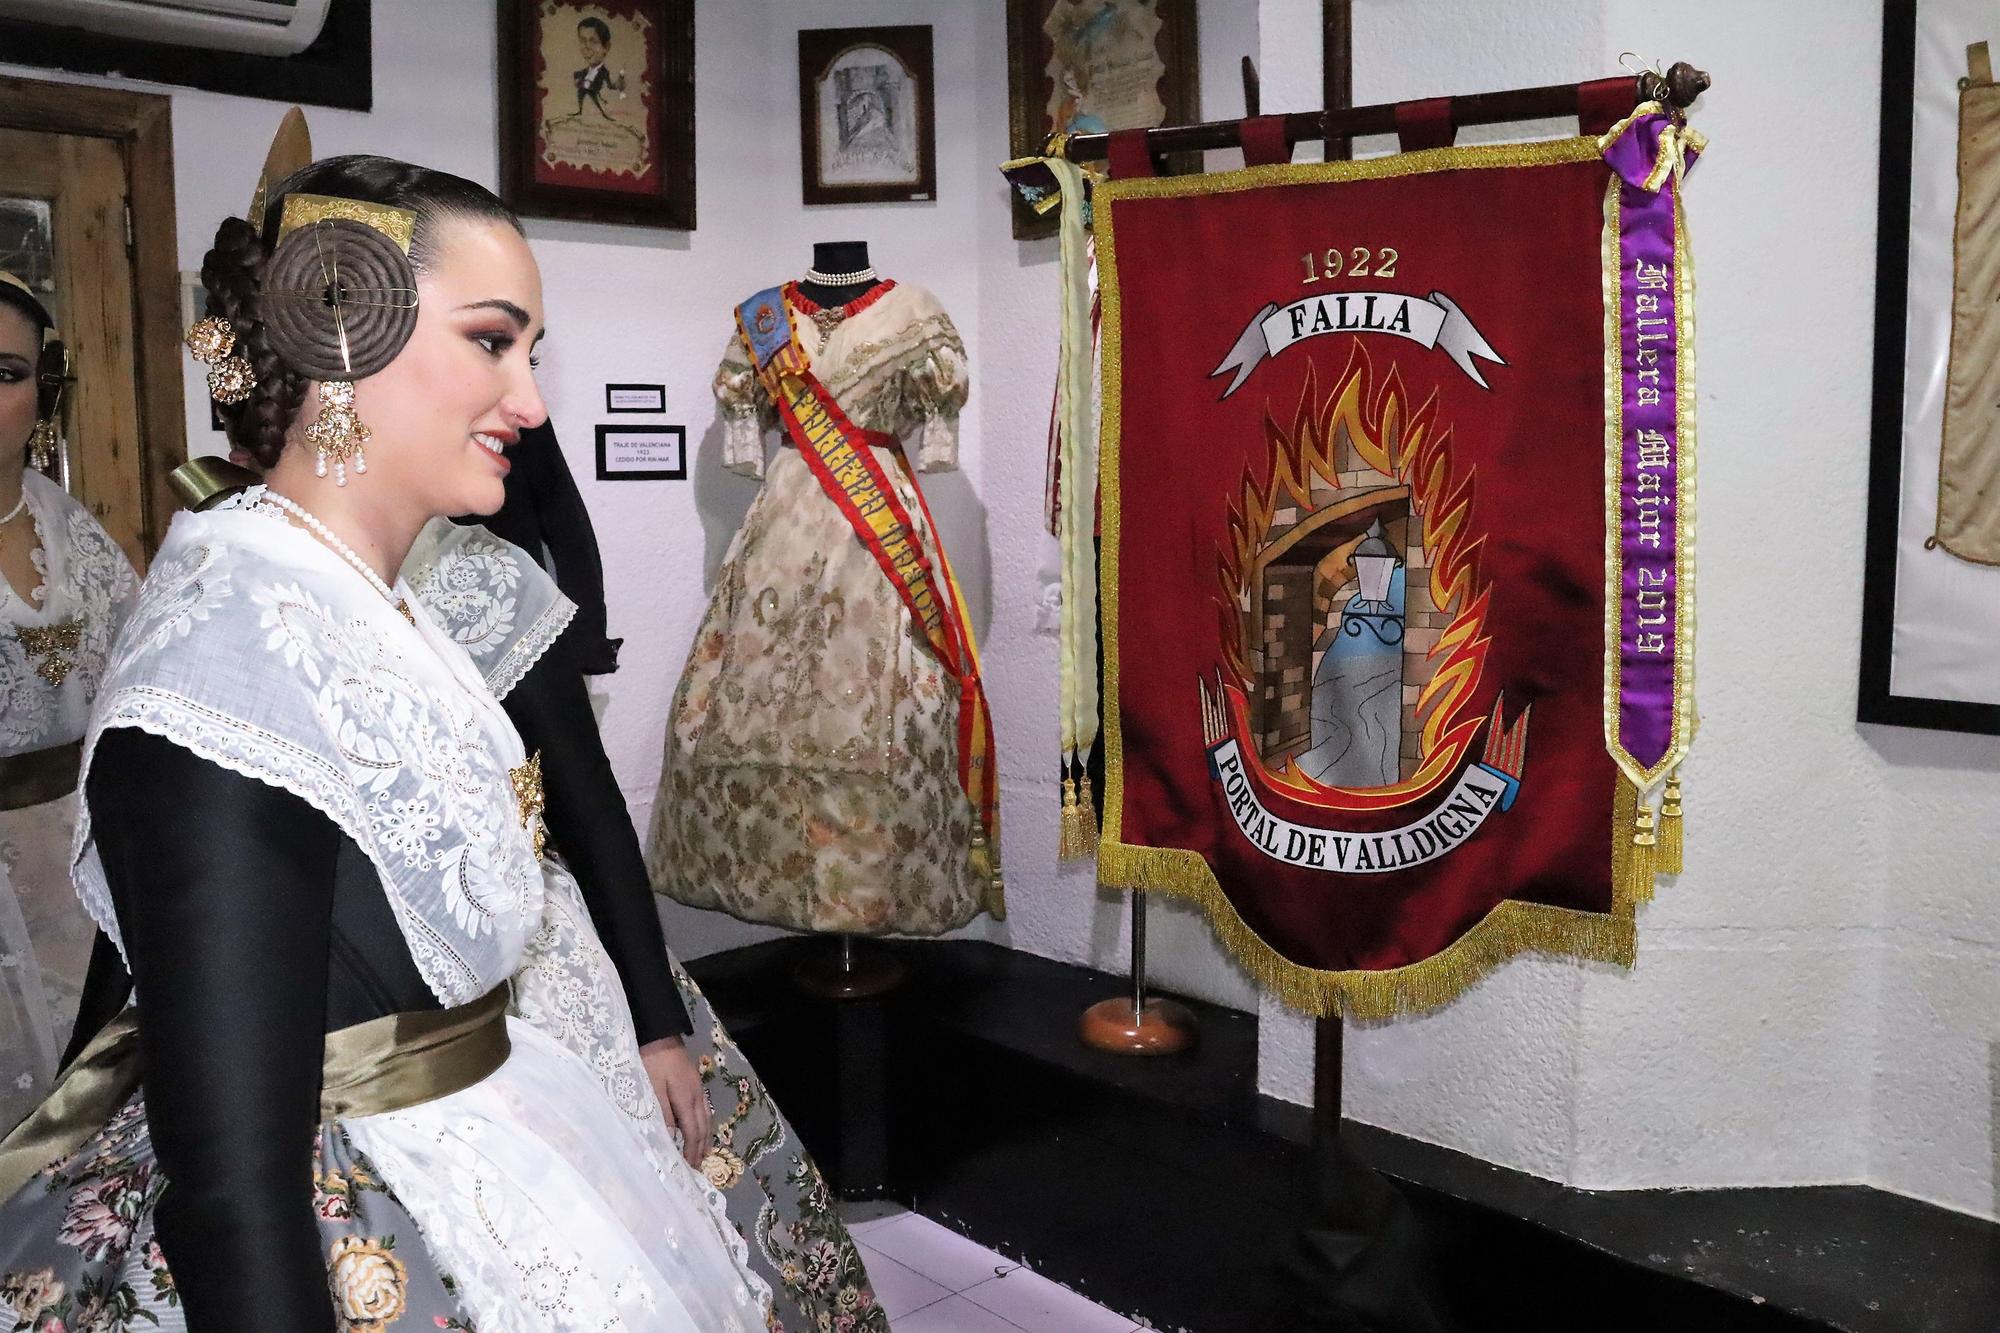 Exposición e inauguración de los 100 años de la falla Portal de Valldigna-Salinas